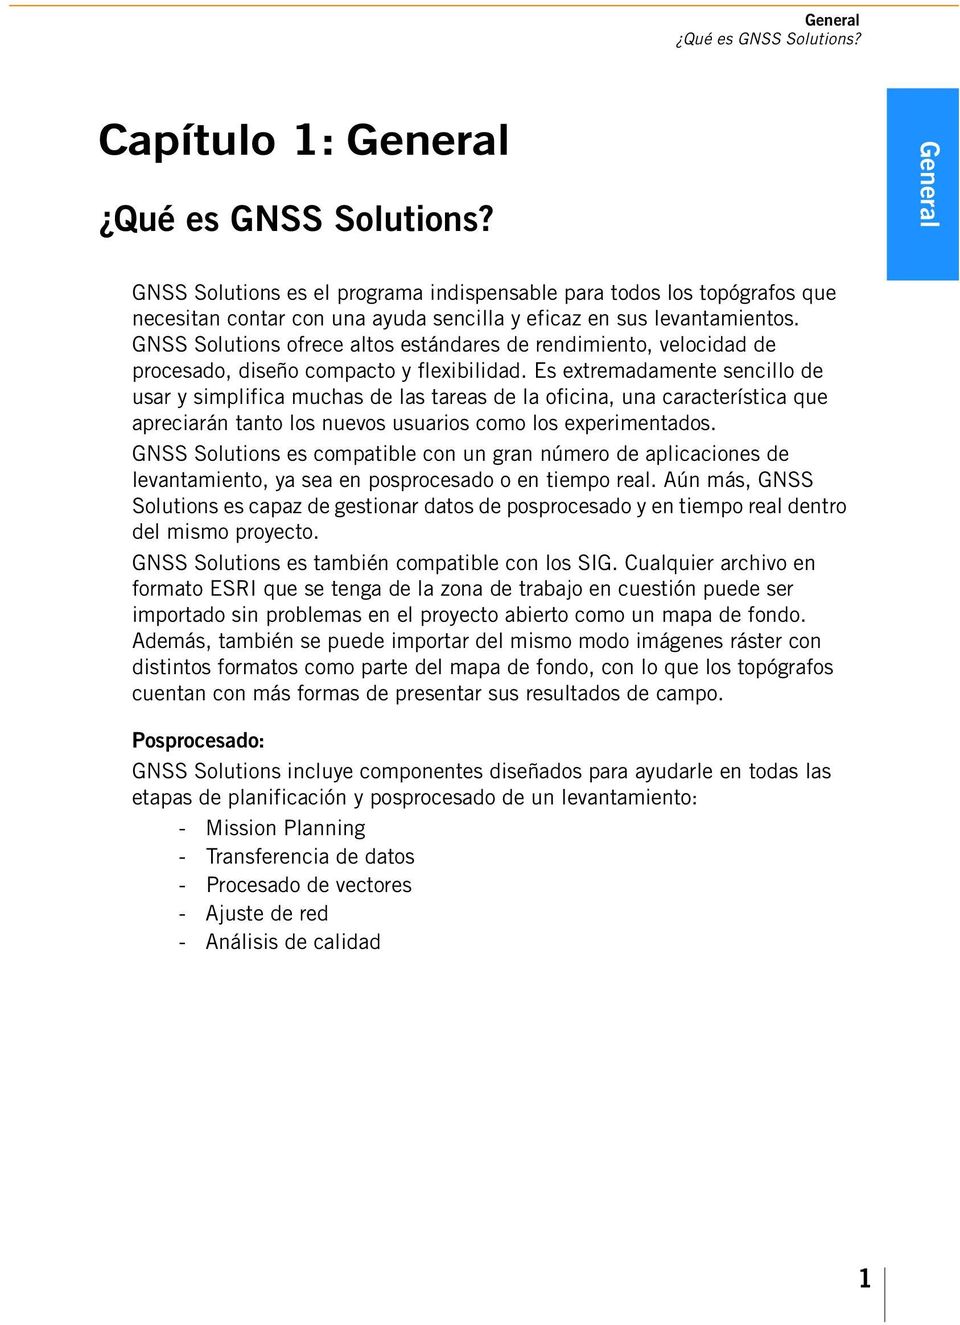 GNSS Solutions ofrece altos estándares de rendimiento, velocidad de procesado, diseño compacto y flexibilidad.